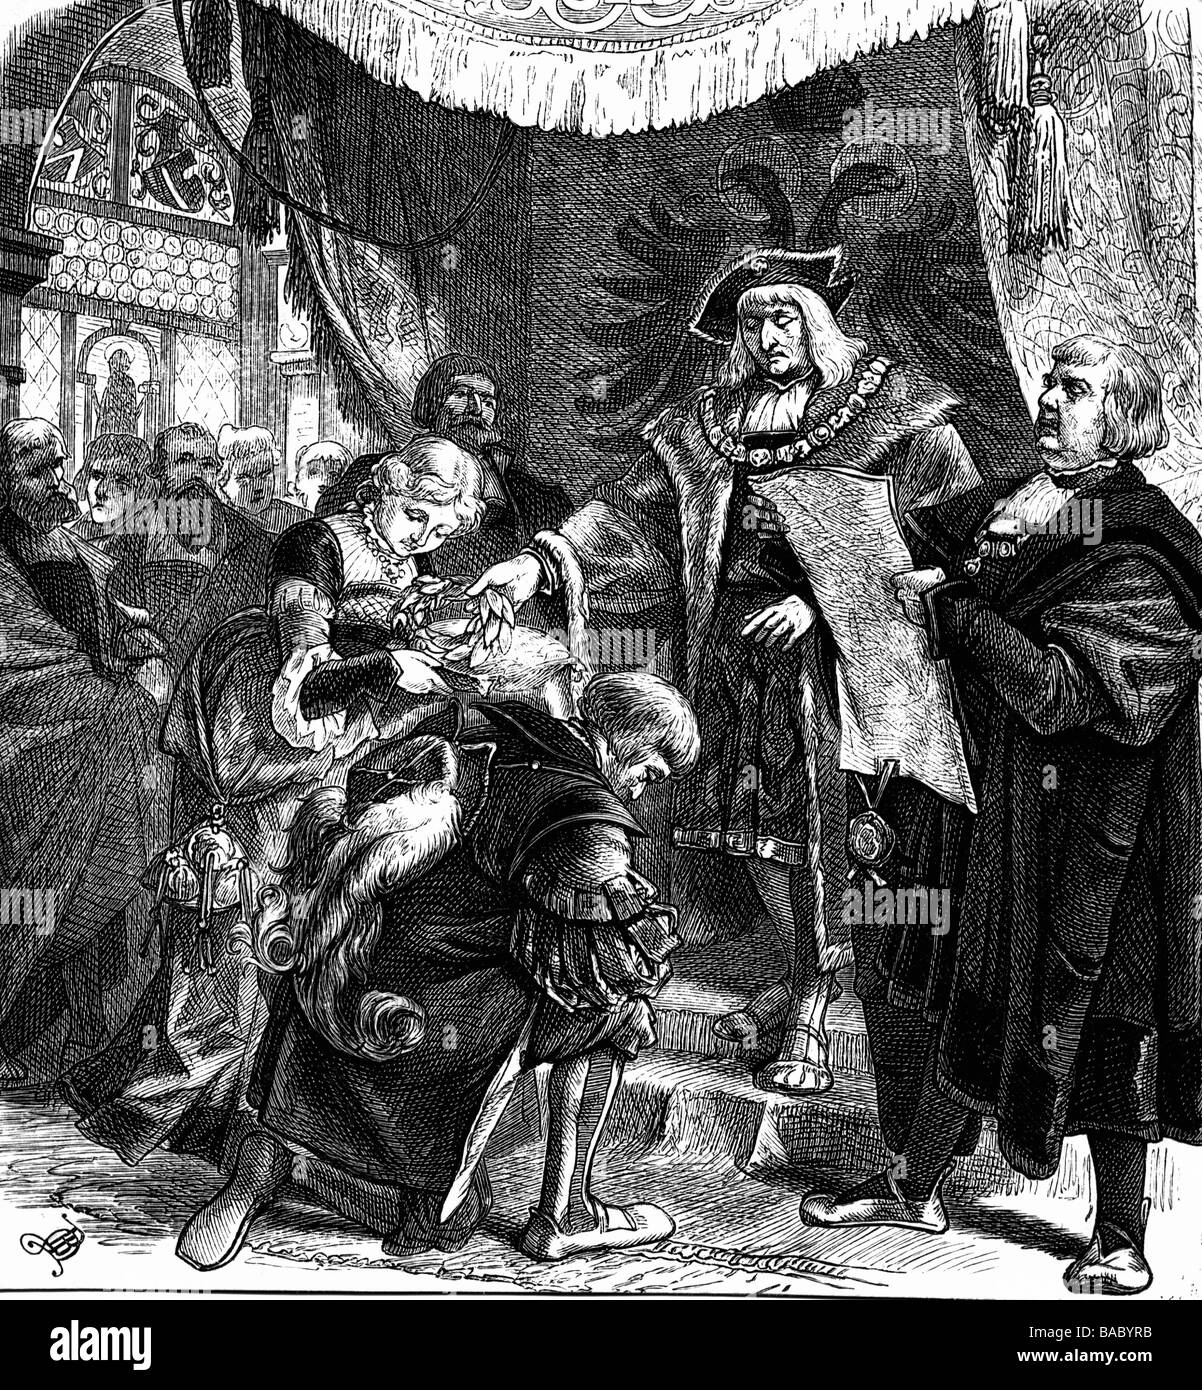 Hutten, Ulrich von, 2.4.1488 - 29.8.1523, cavaliere e umanista tedesco, incoronazione al poeta di Massimiliano i, incisione in legno, 19th secolo, Foto Stock